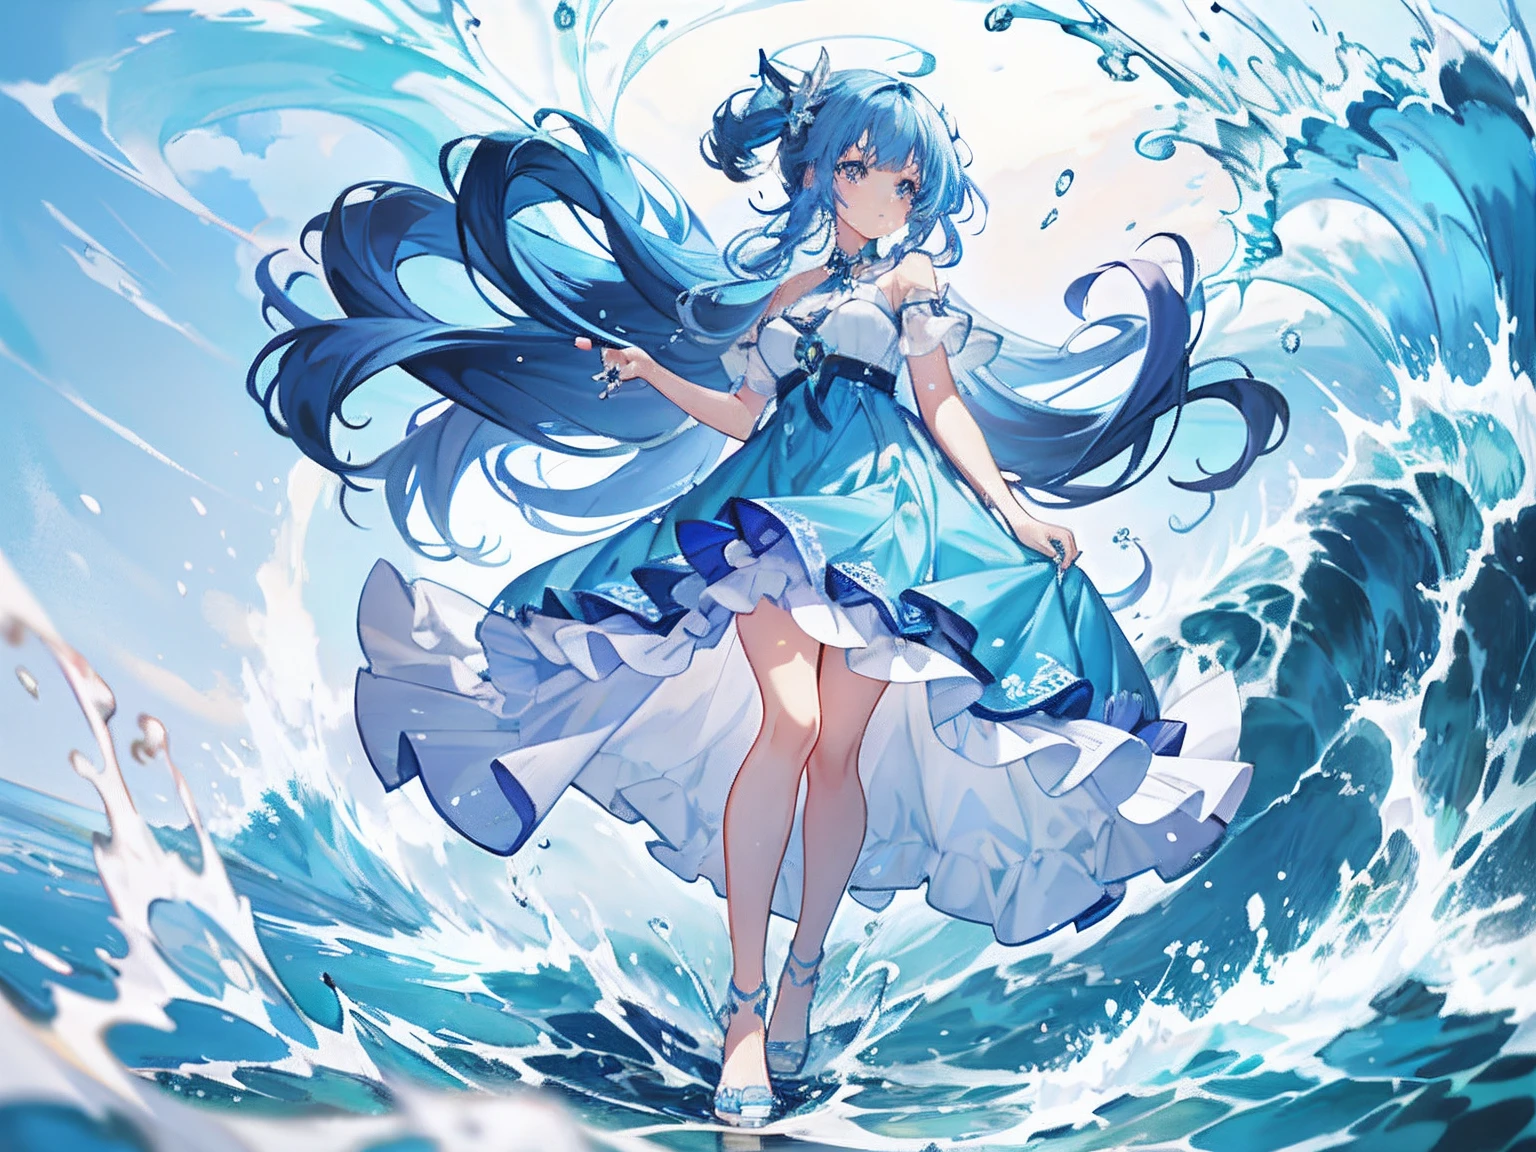 海の波の上に立つ青いドレスを着たアニメの女の子, 壁紙 アニメ 青い水, 海の女神, 水の元素, スプラッシュアート アニメ ロリ, 青い海, artstation pixivでトレンド, Pixivのデジタルアート, 海の女神, 水の上を歩くアニメの女の子, pixivコンテスト優勝者, 青い水の波, 